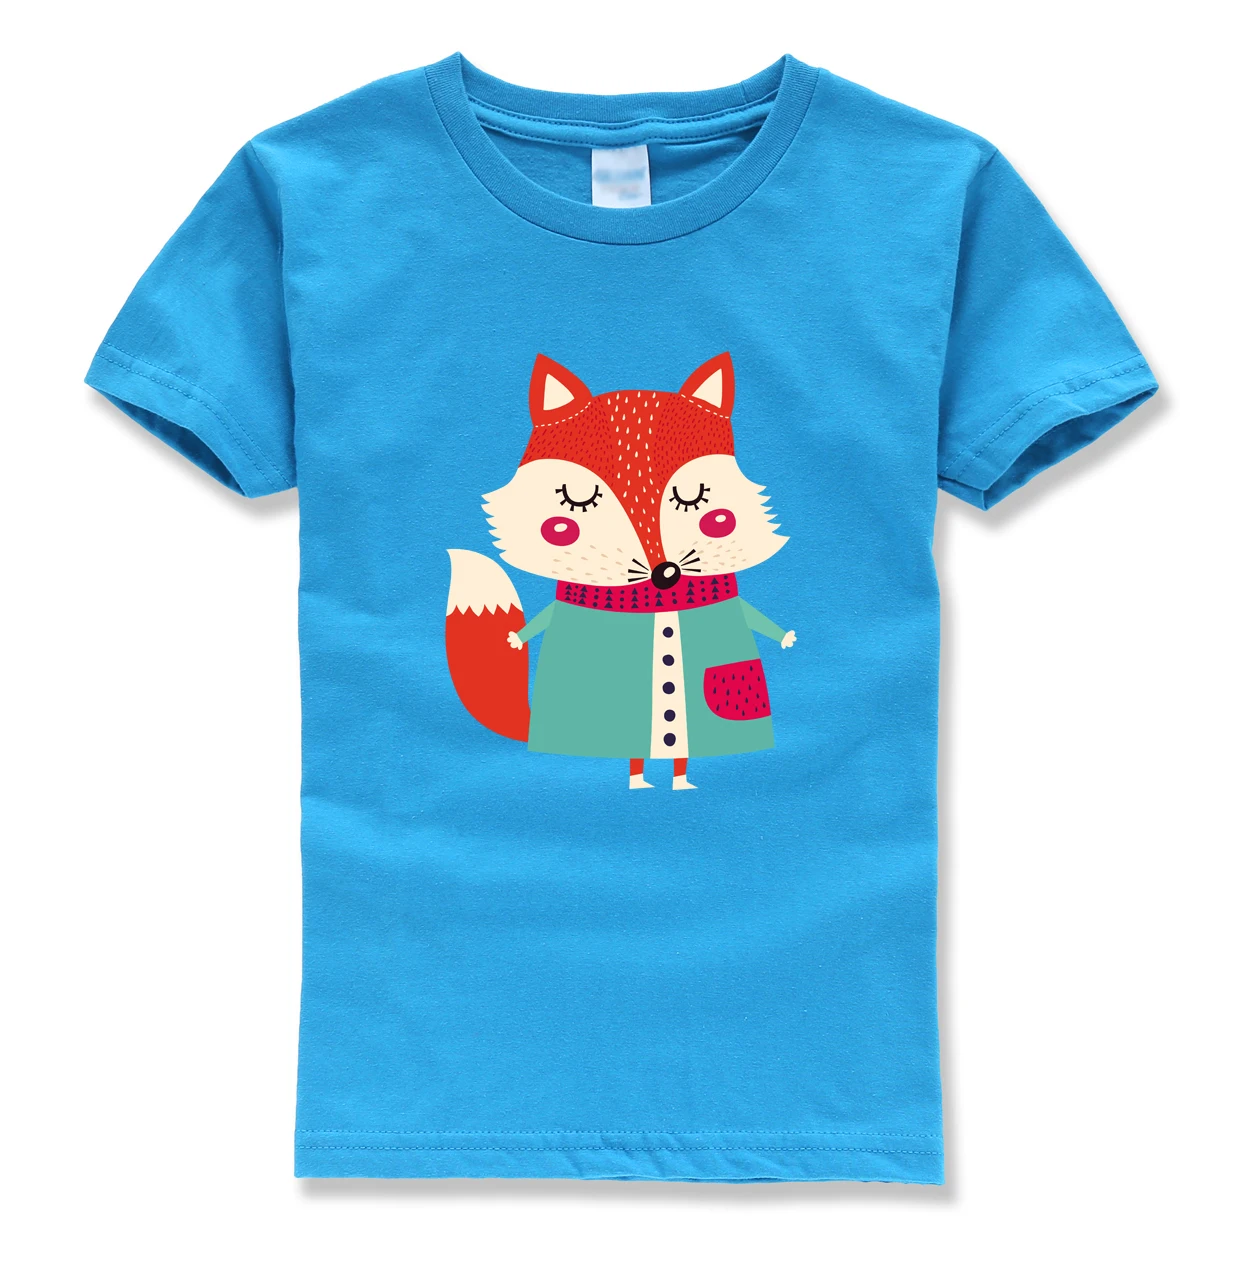 2018 Летний Новый модный бренд homme Футболки Дети Битник Забавный Одежда животных Топы футболка с коротким рукавом для детей рубашка для